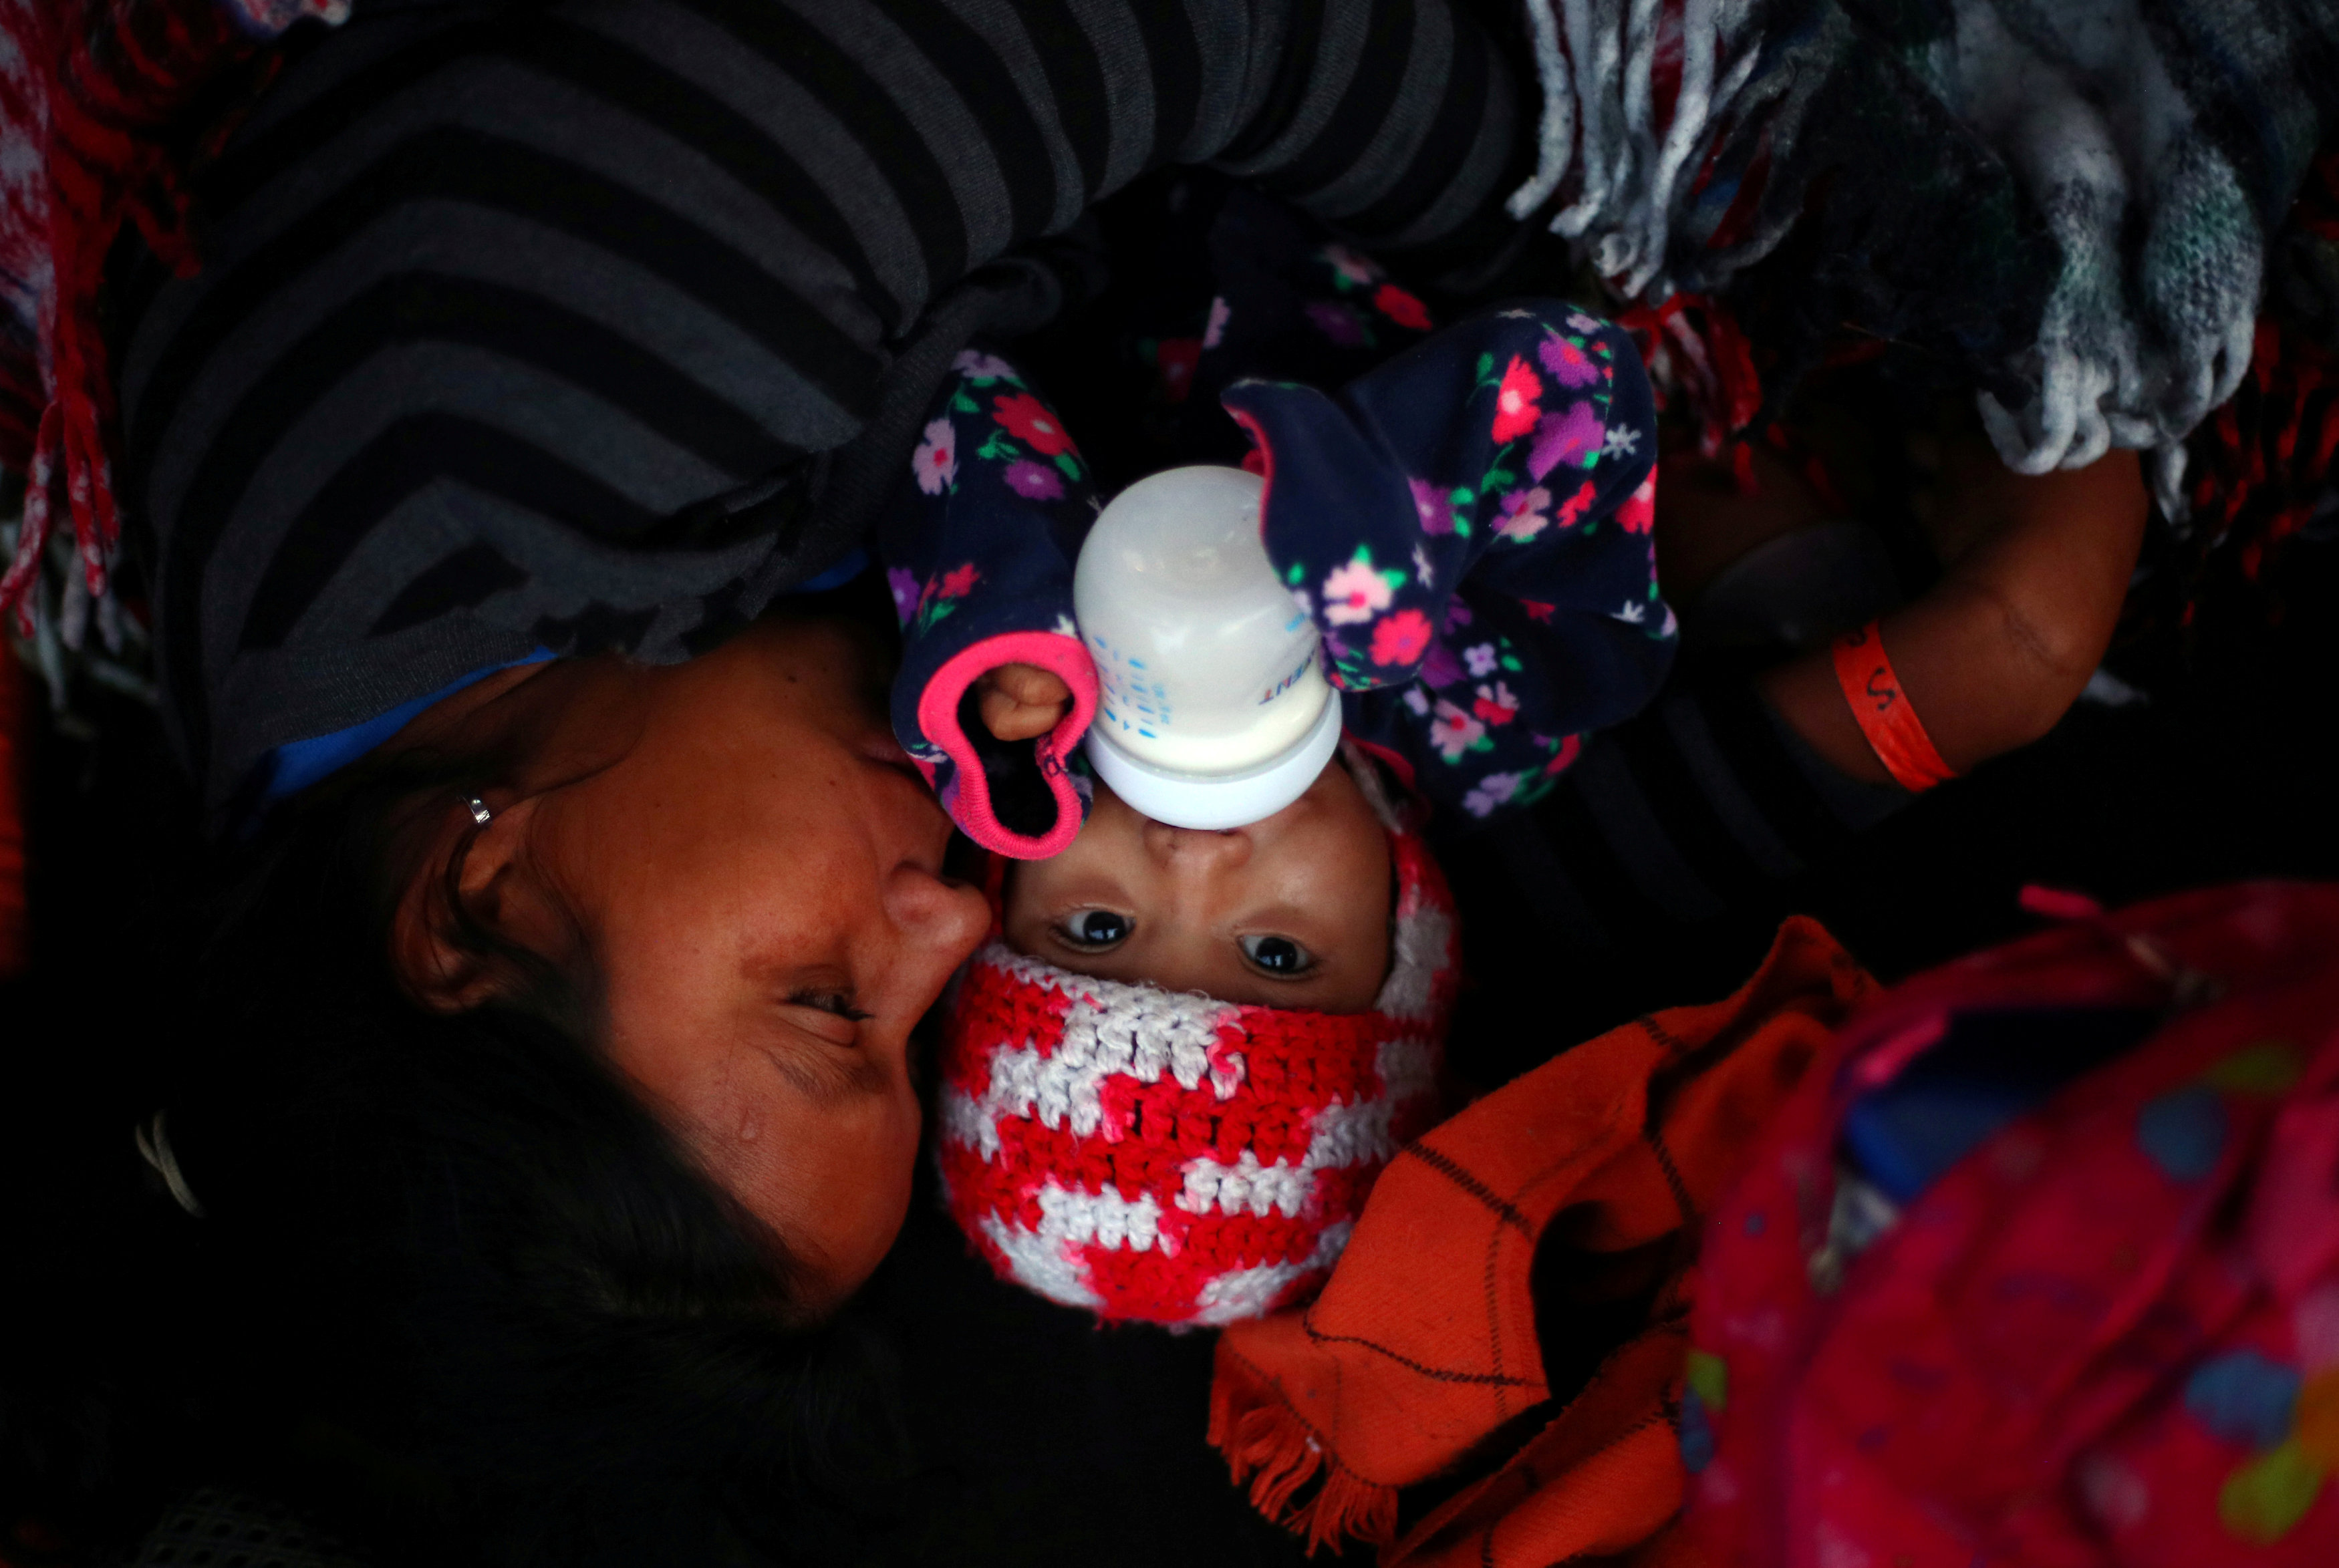 آلاف المهاجرون فى مخيم للايواء بالمكسيك (5)